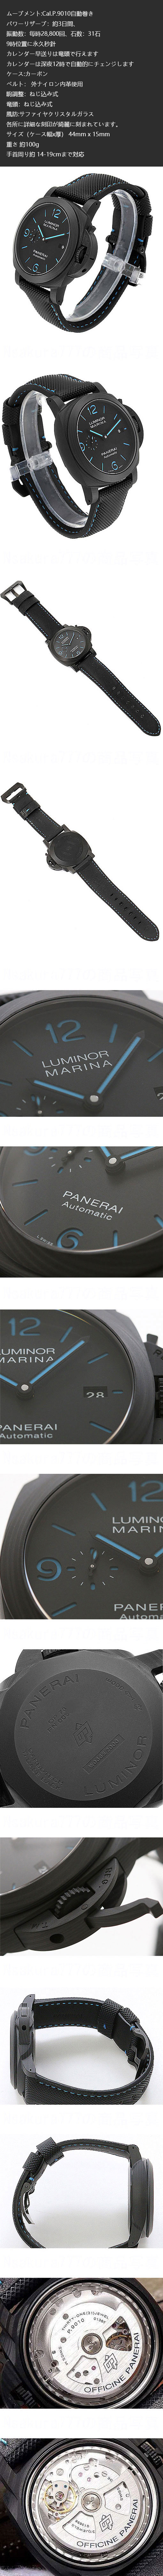 パネライコピー時計 ルミノールマリーナ カーボテック PAM01661 新作品